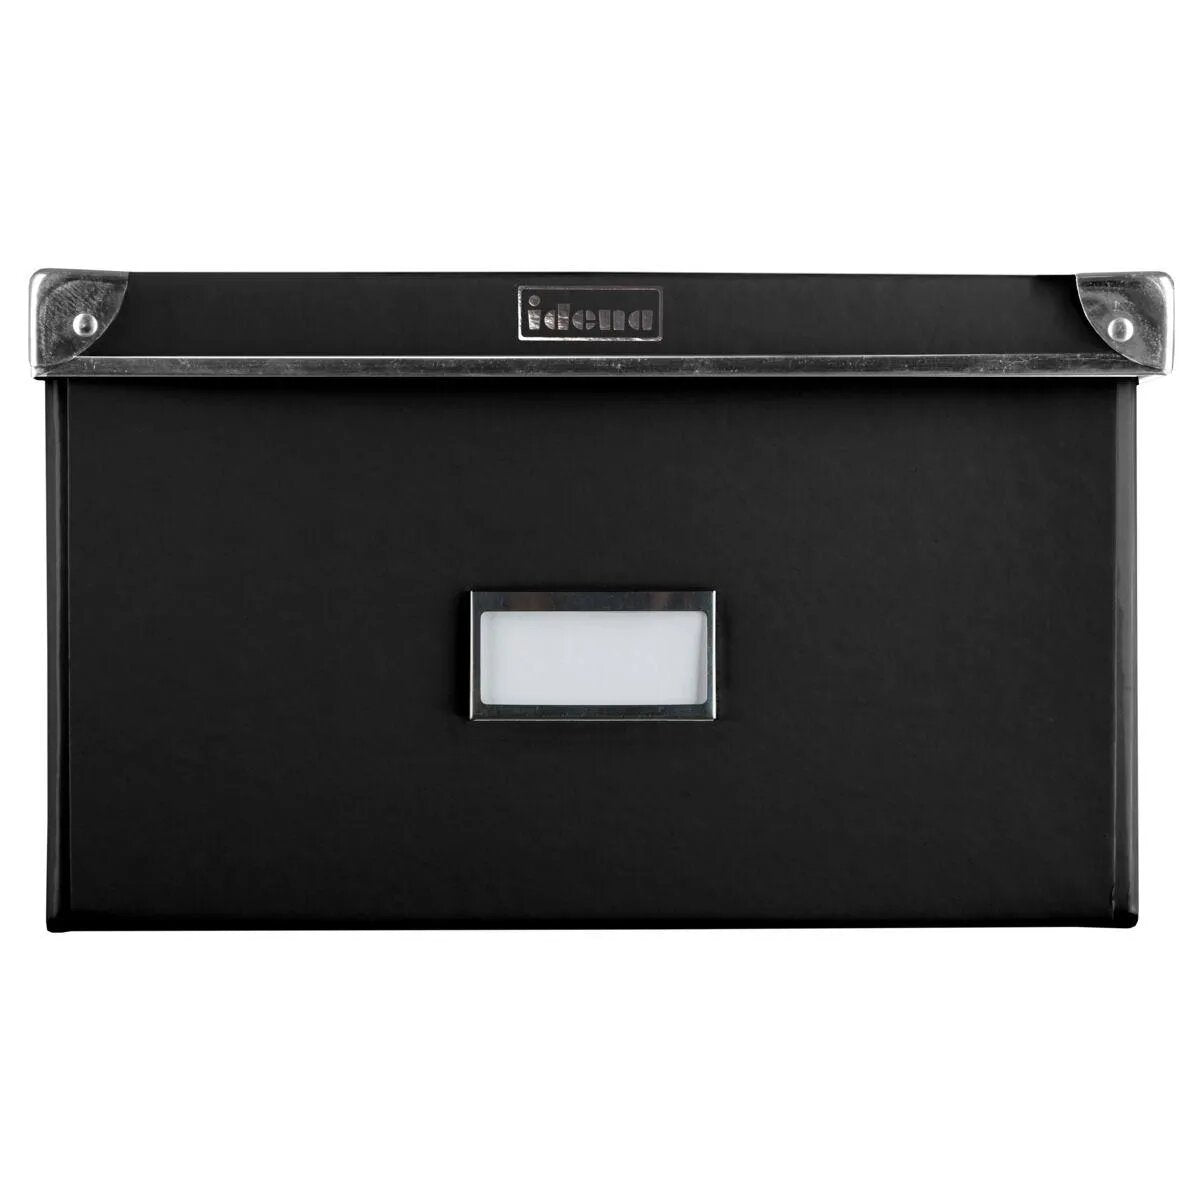 Idena Aufbewahrungsbox mit Deckel, 36 x 28 x 17 cm, aus Pappe, faltbar, schwarz